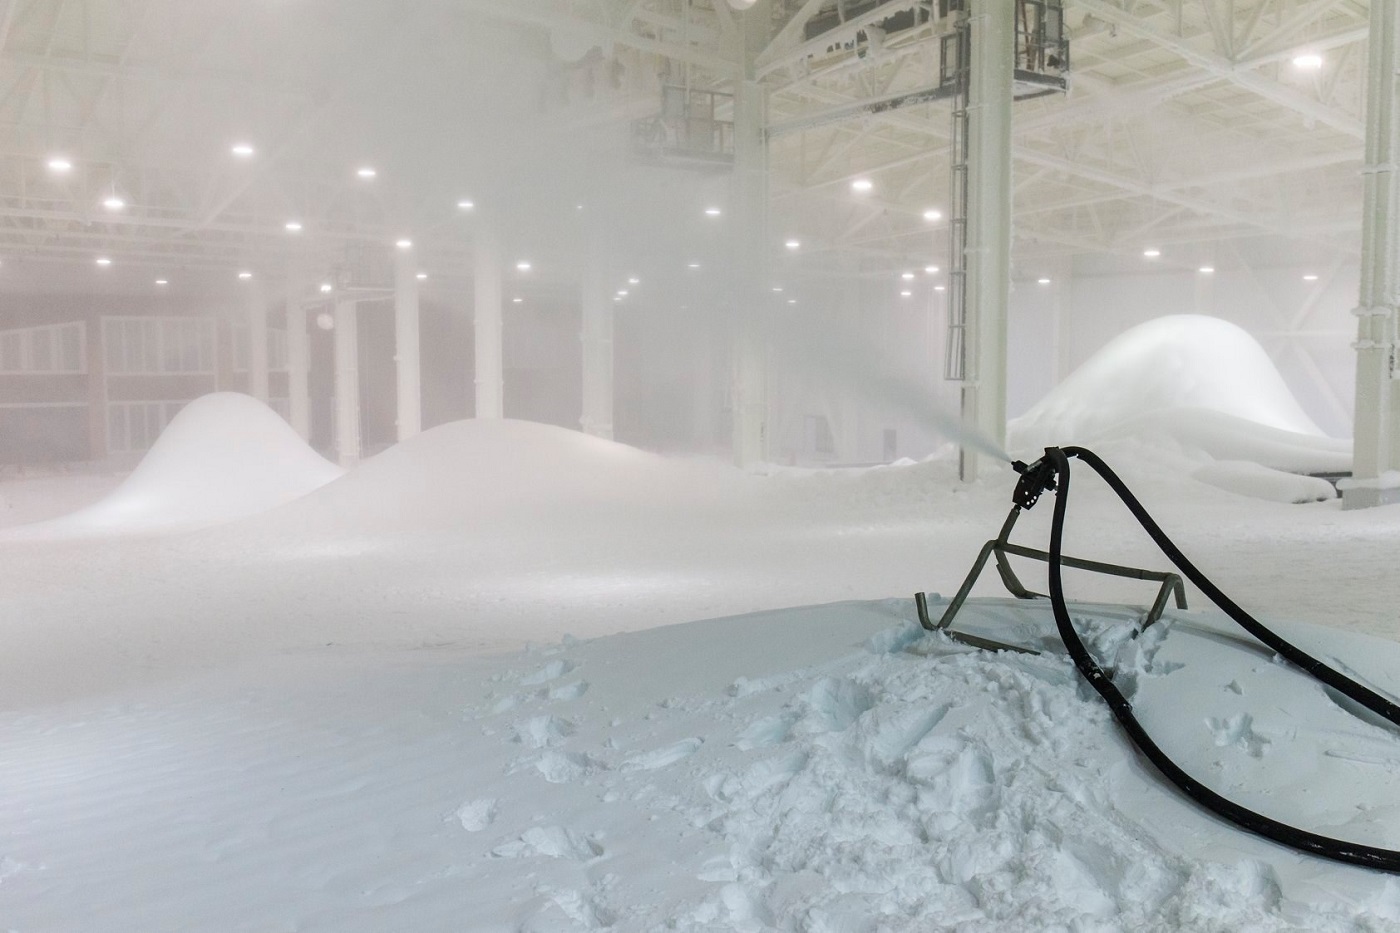 La primera estación de esquí cubierta de EE.UU. abrirá con 5,5 toneladas de nieve y 4 pistas